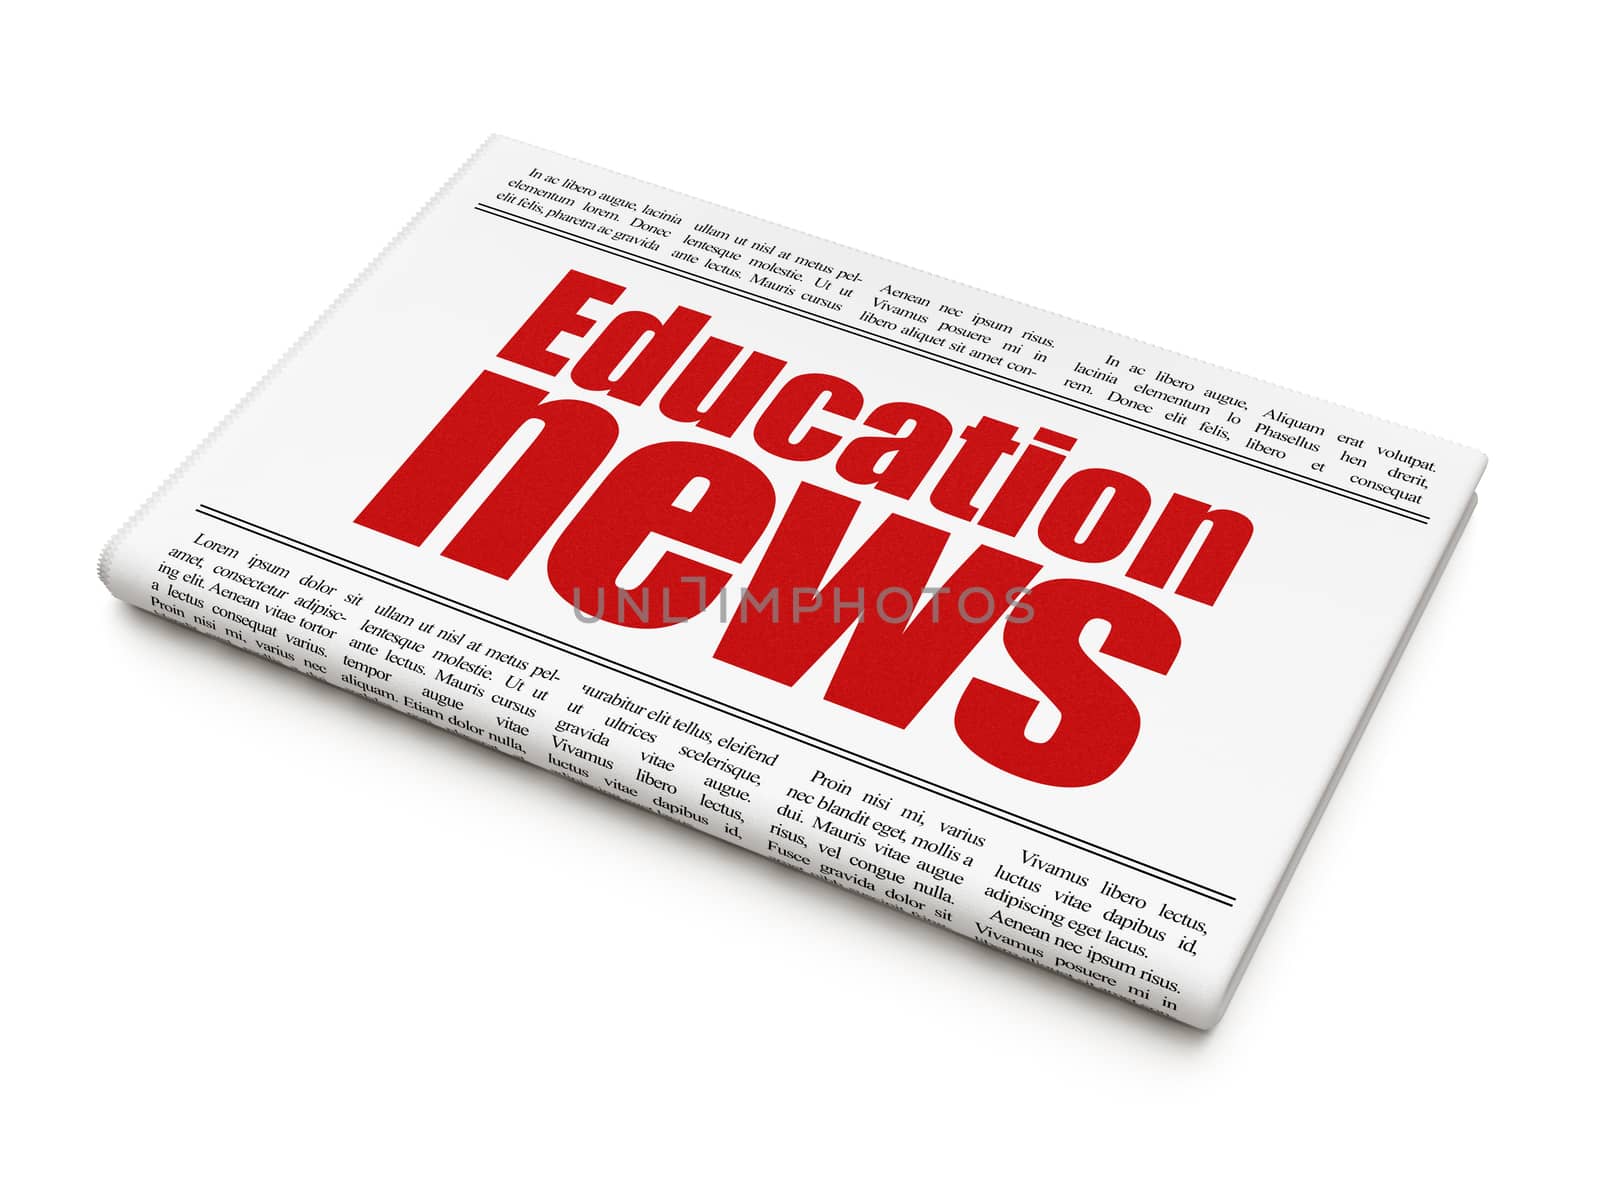 News news concept: newspaper headline Education News by maxkabakov